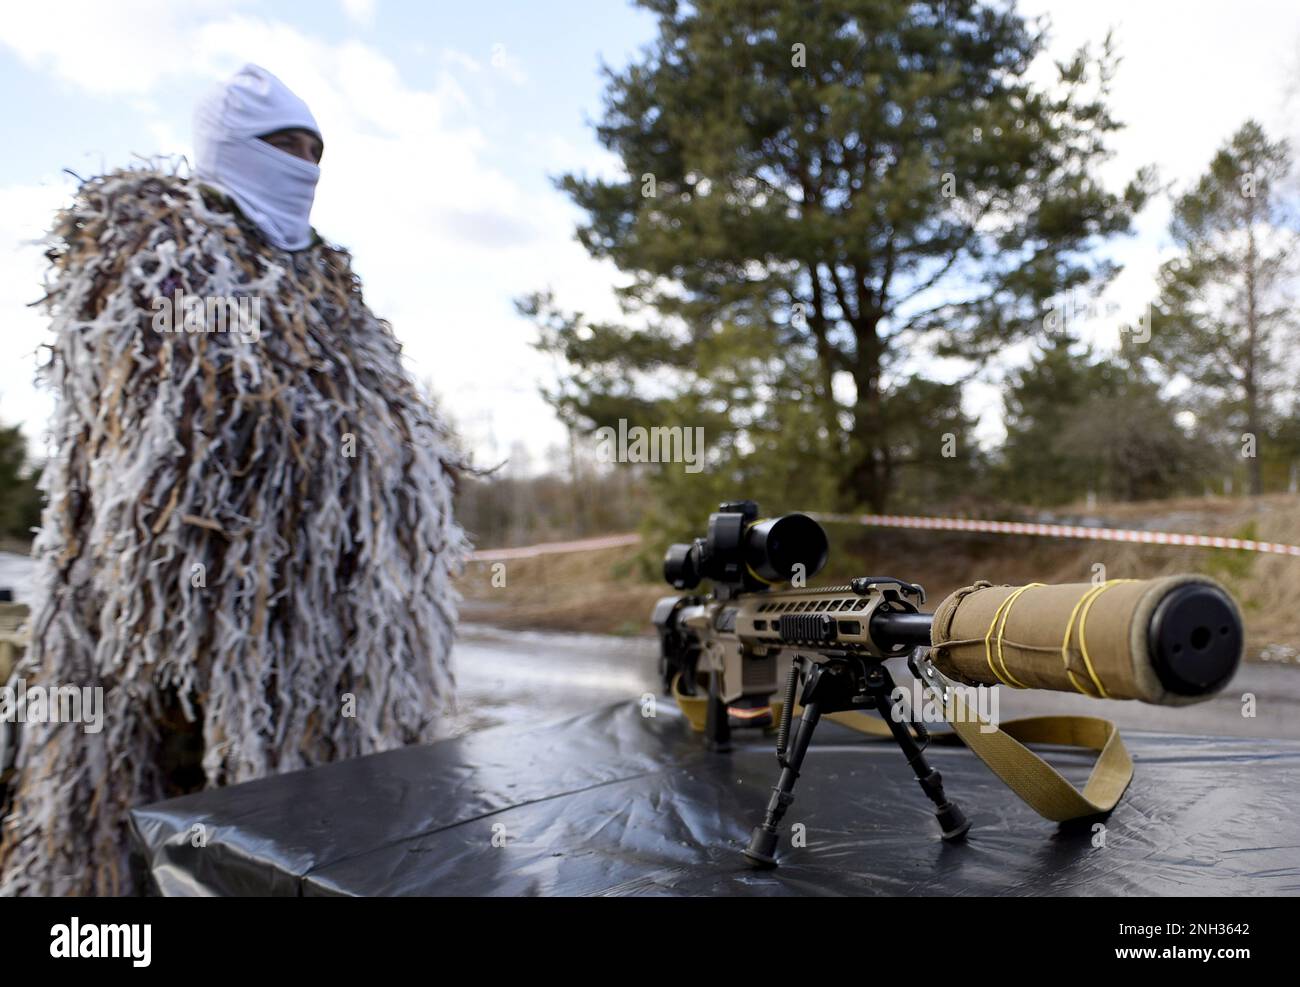 REGIONE DI KYIV, UCRAINA - 20 FEBBRAIO 2023 - Un serviceman ucraino in una tuta di ghillie d'inverno si alza da un fucile da cecchino durante un esercizio militare su larga scala Foto Stock